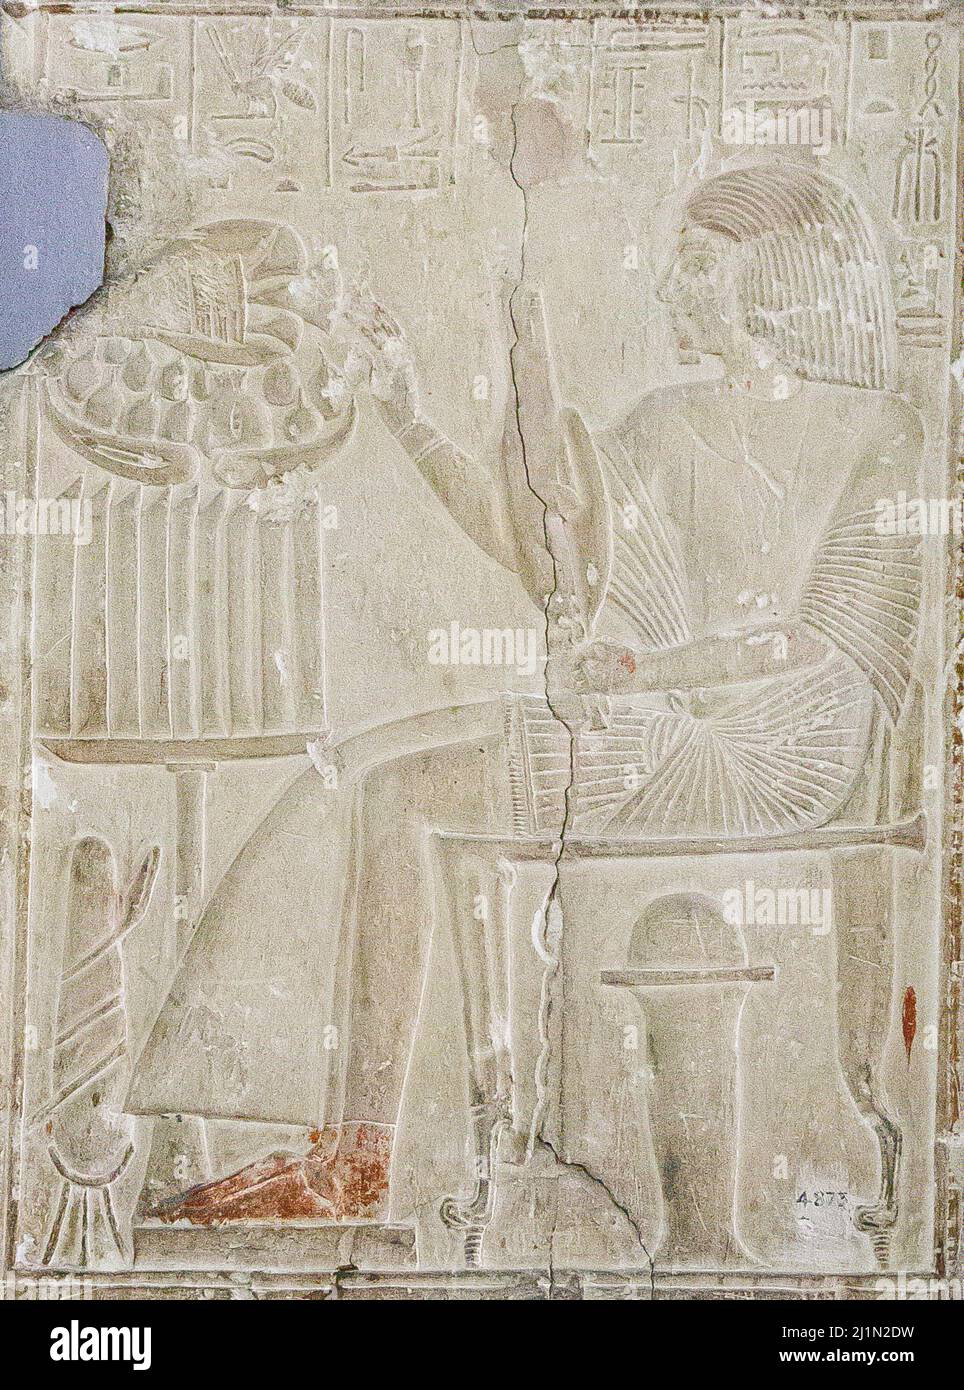 El Cairo, Museo Egipcio, de Saqqara, tumba de Ptahmose. El fallecido delante de una mesa de ofrendas. Foto de stock